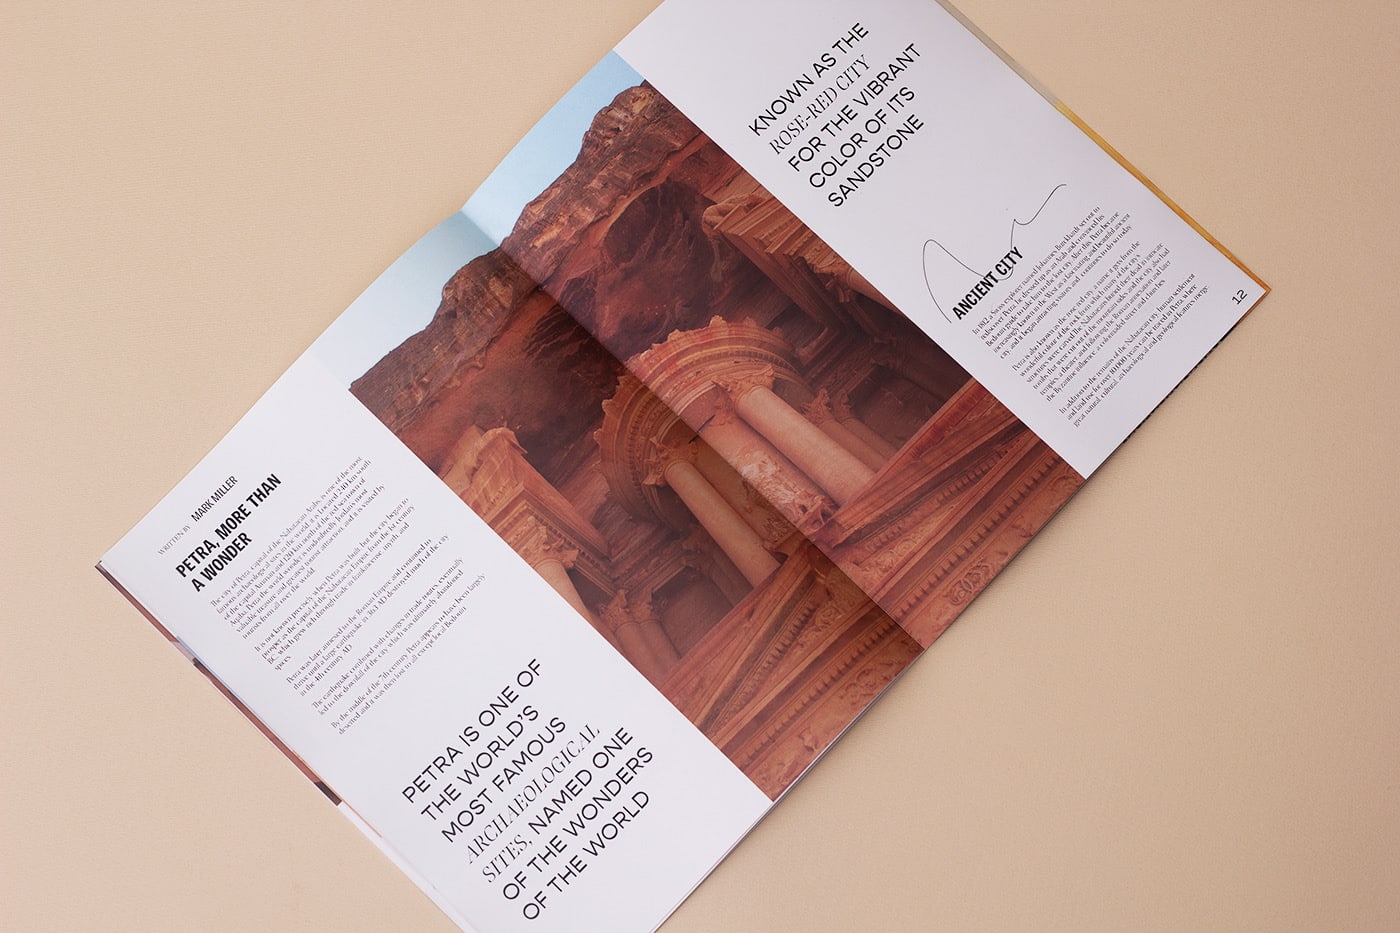 中东旅游杂志Mirage版面设计